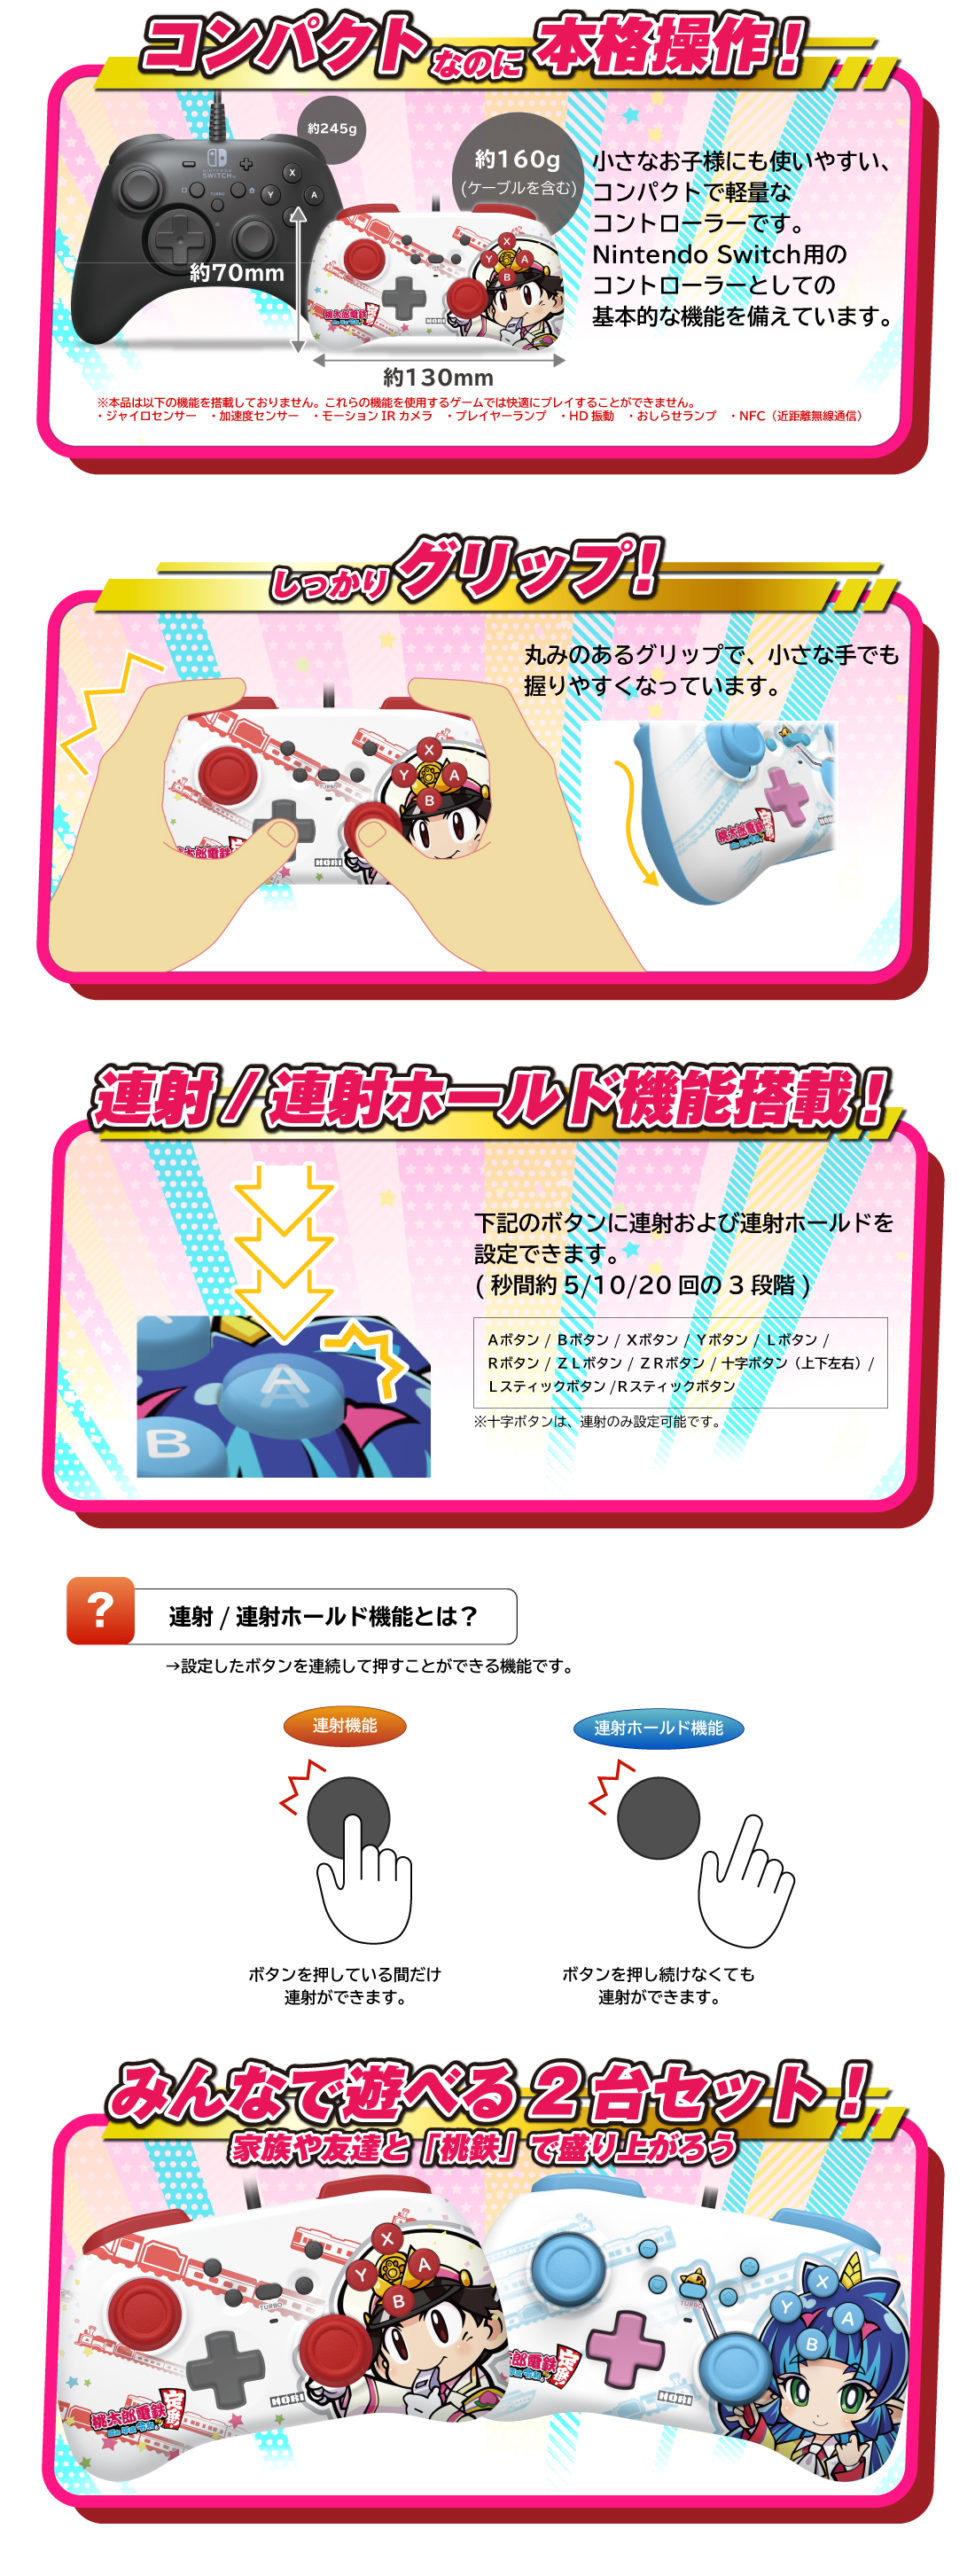 株式会社 HORI | ホリパッド ミニ for Nintendo Switch 桃太郎・夜叉姫 